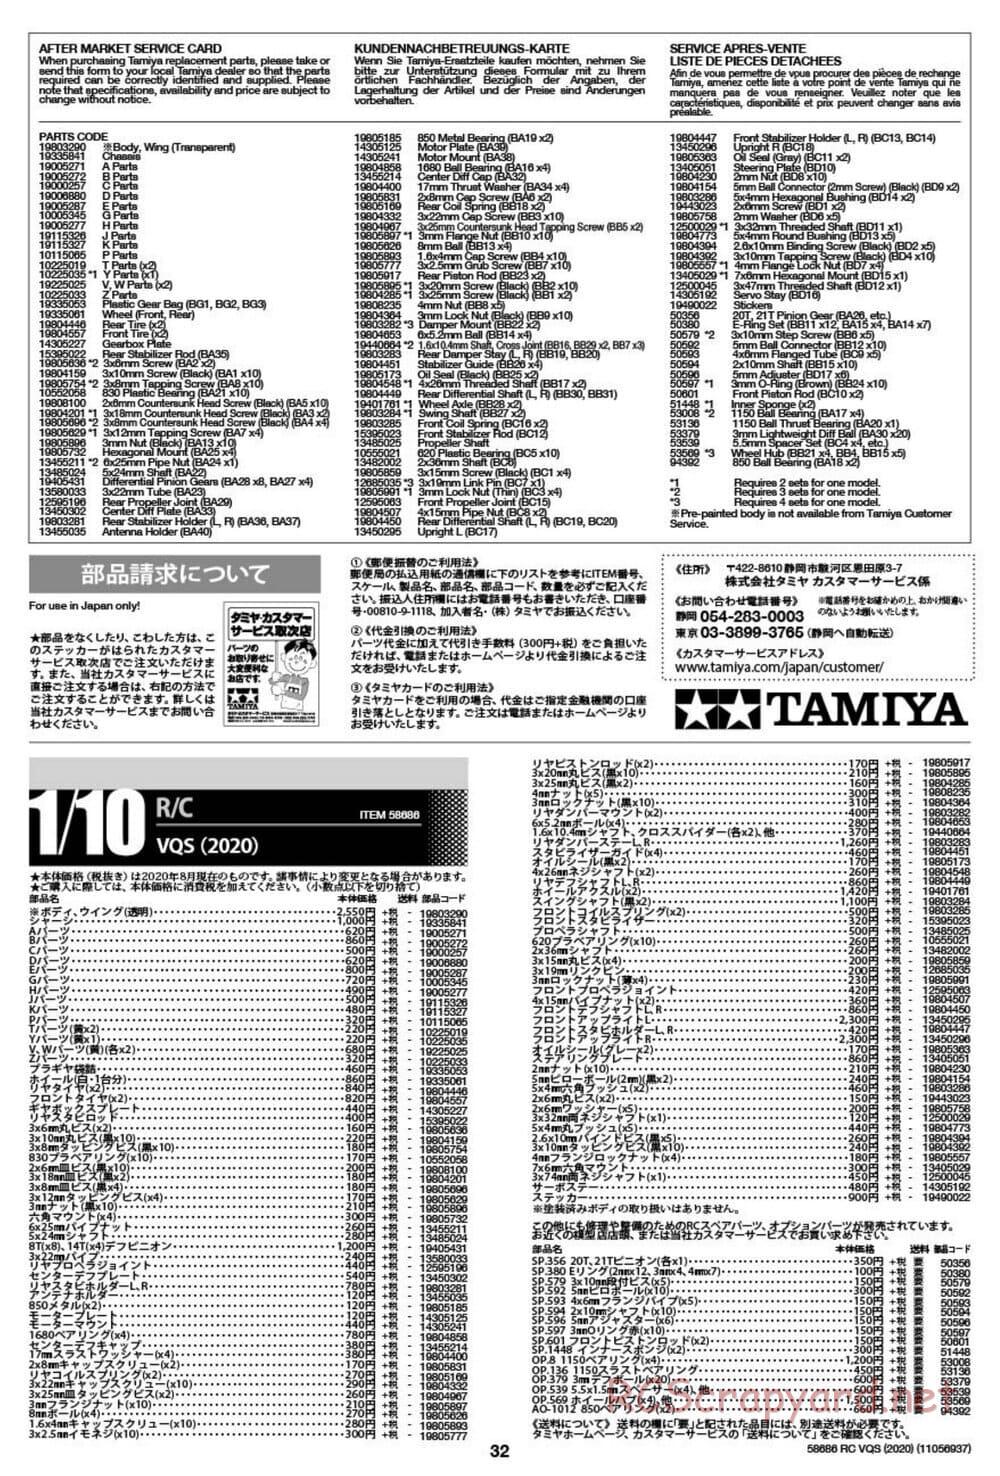 Tamiya - VQS (2020) - AV Chassis - Manual - Page 32